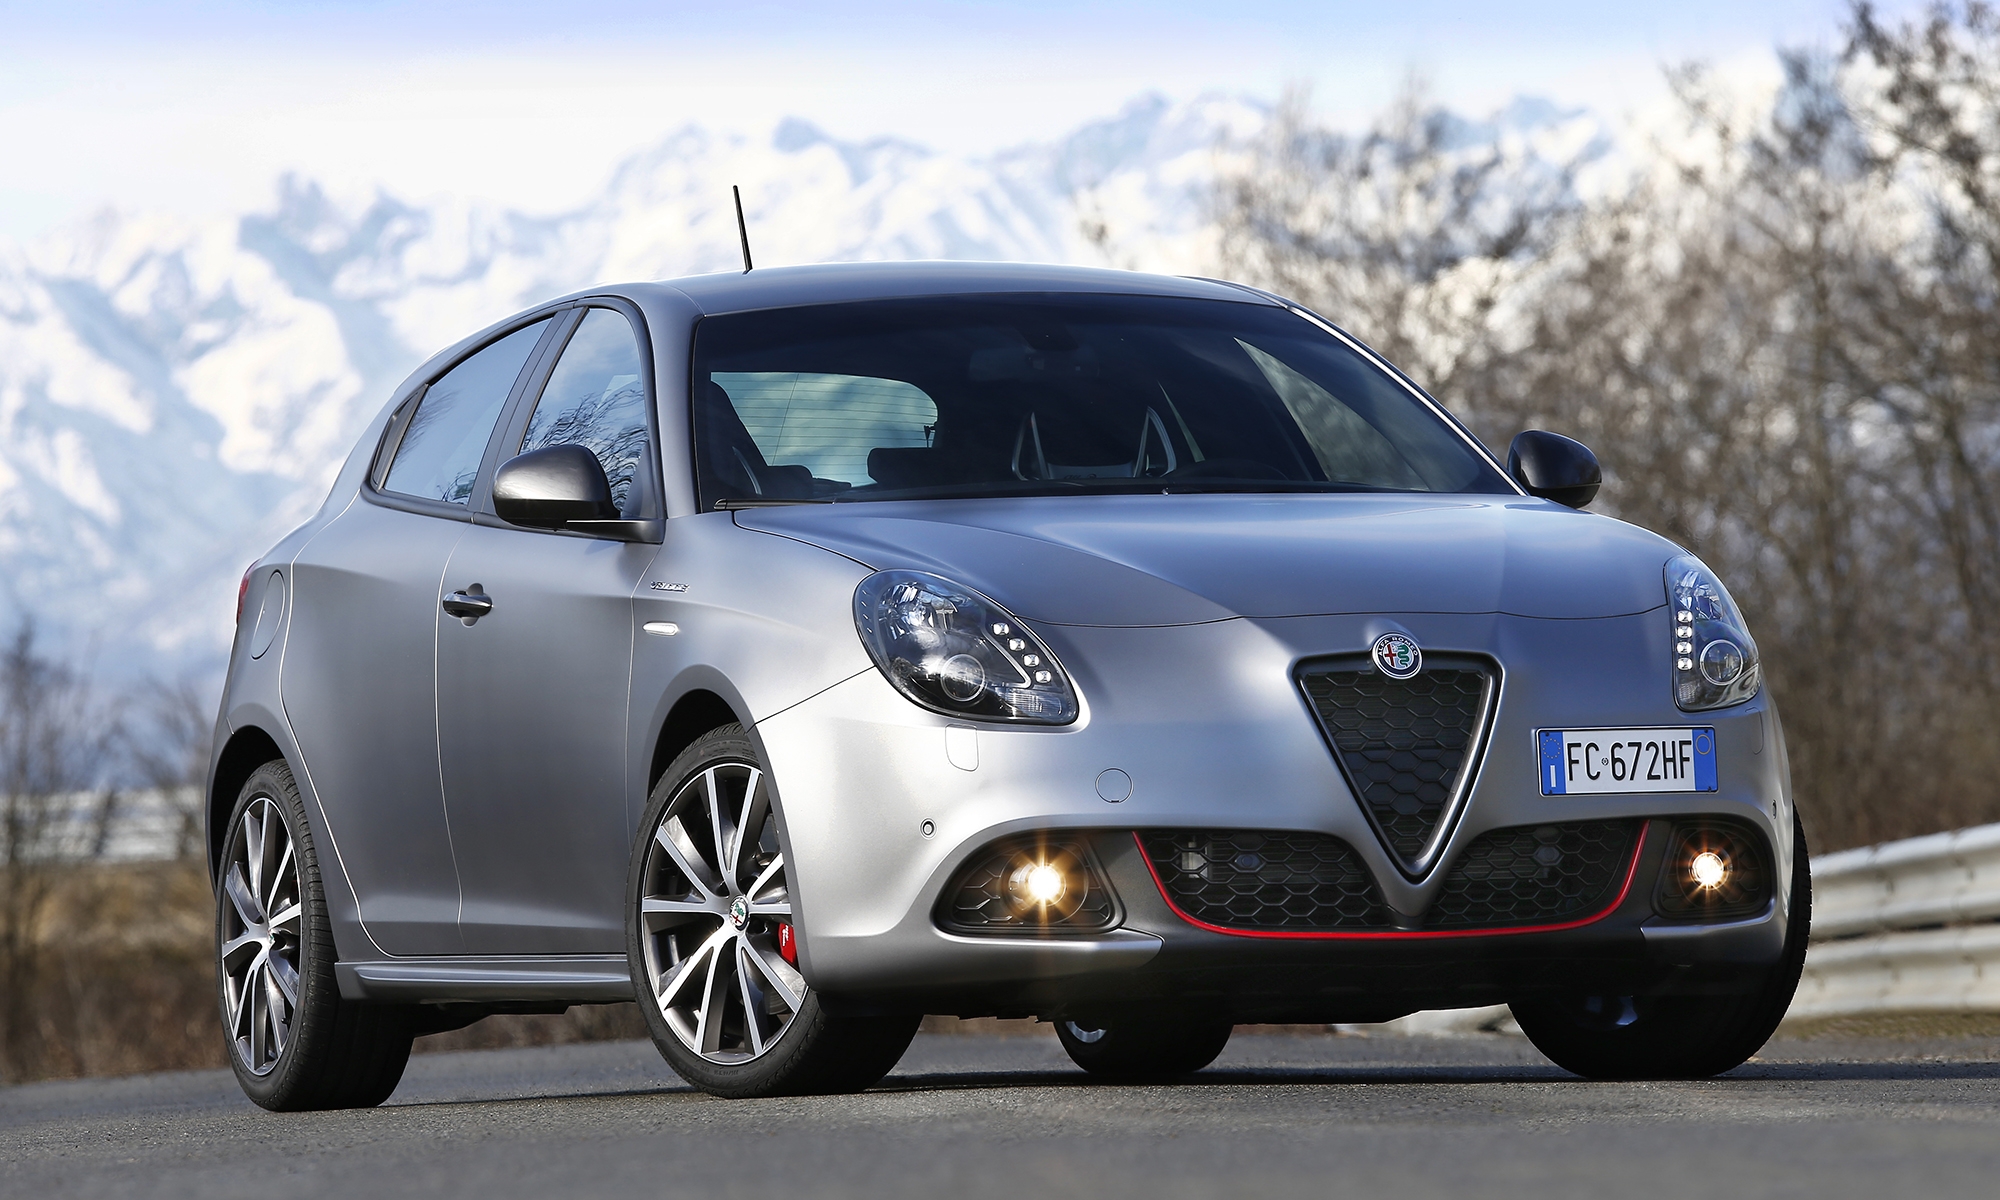 El Alfa Romeo Giulietta llegará al mercado en los próximos años como compacto eléctrico.